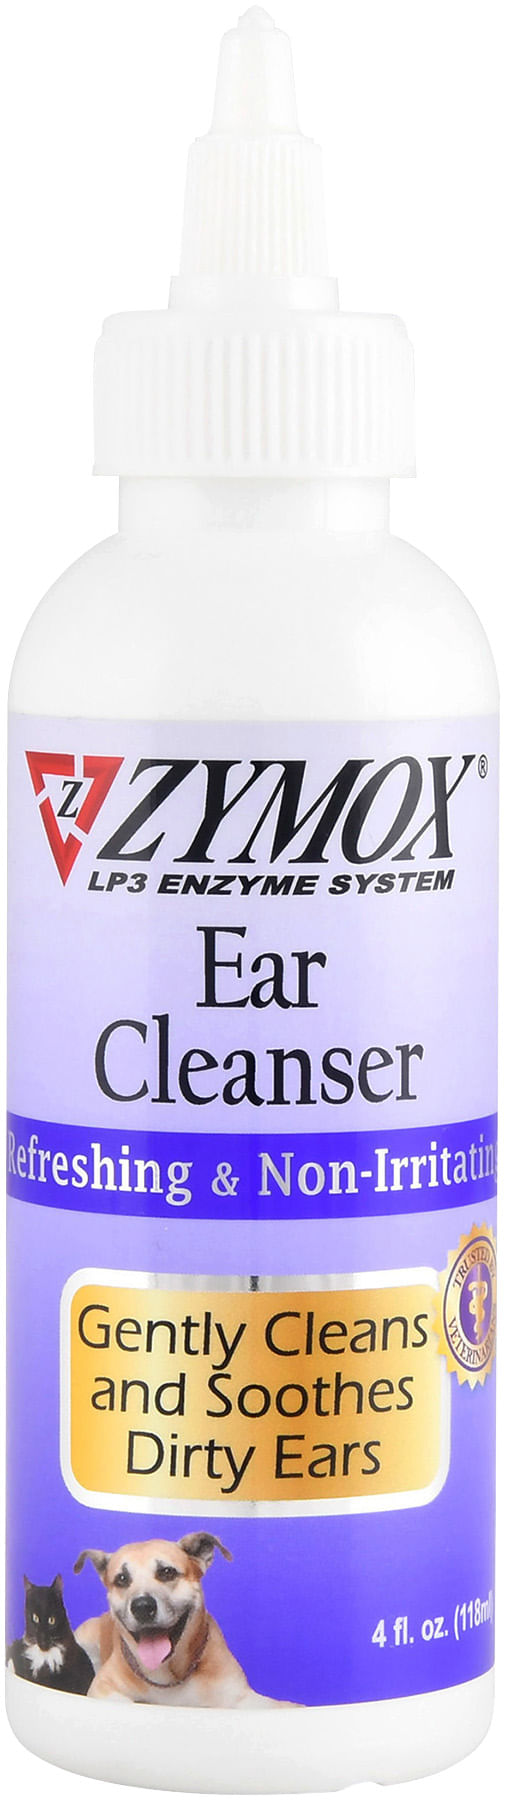 ZYMOX-Ear-Cleanser-4-oz-bottle